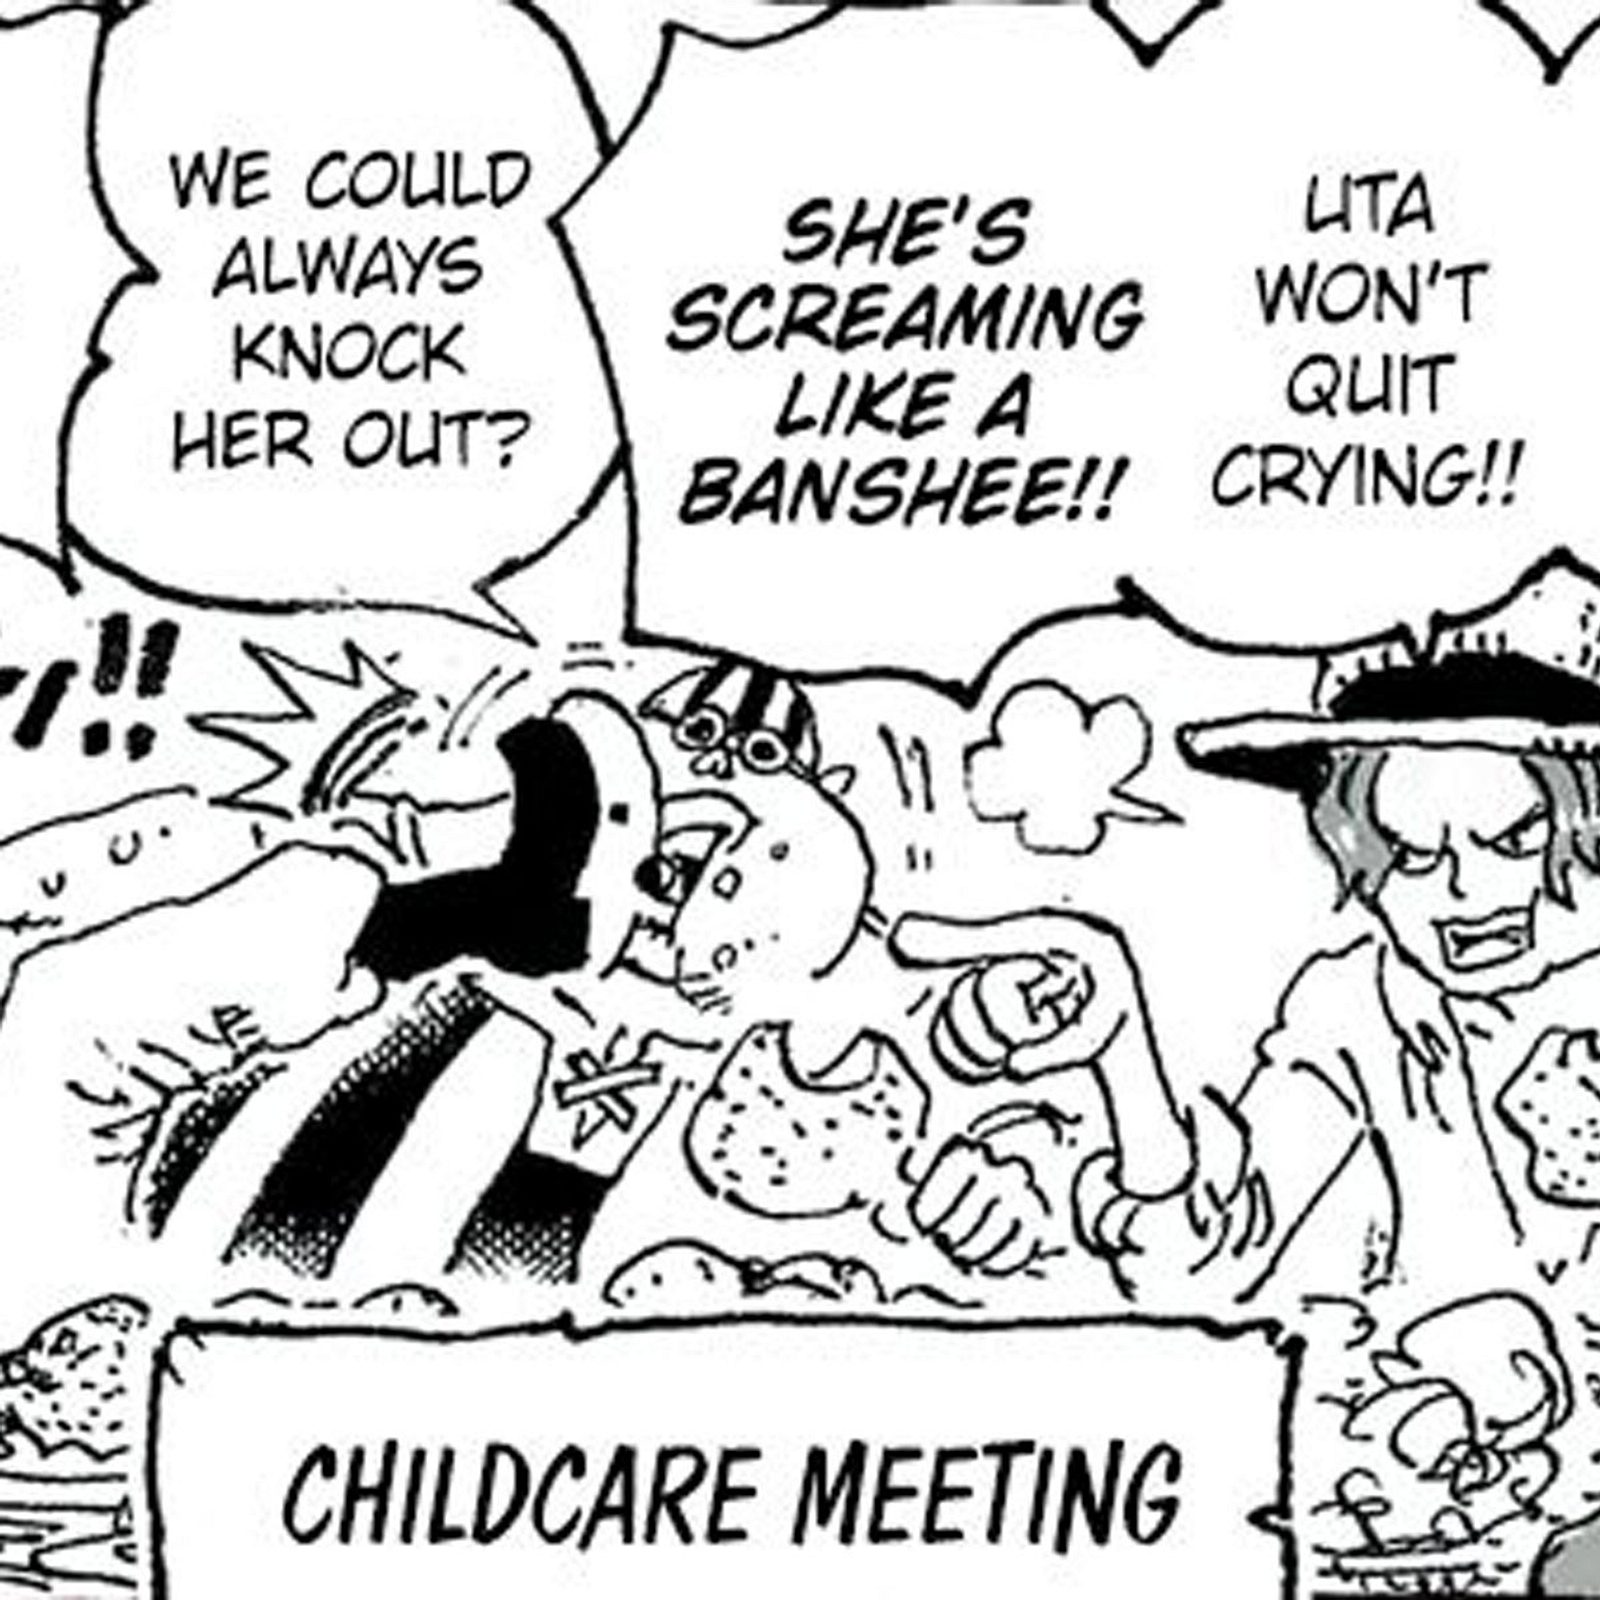 One Piece UP - O capítulo 1058 chegou!! Aproveitem, semana